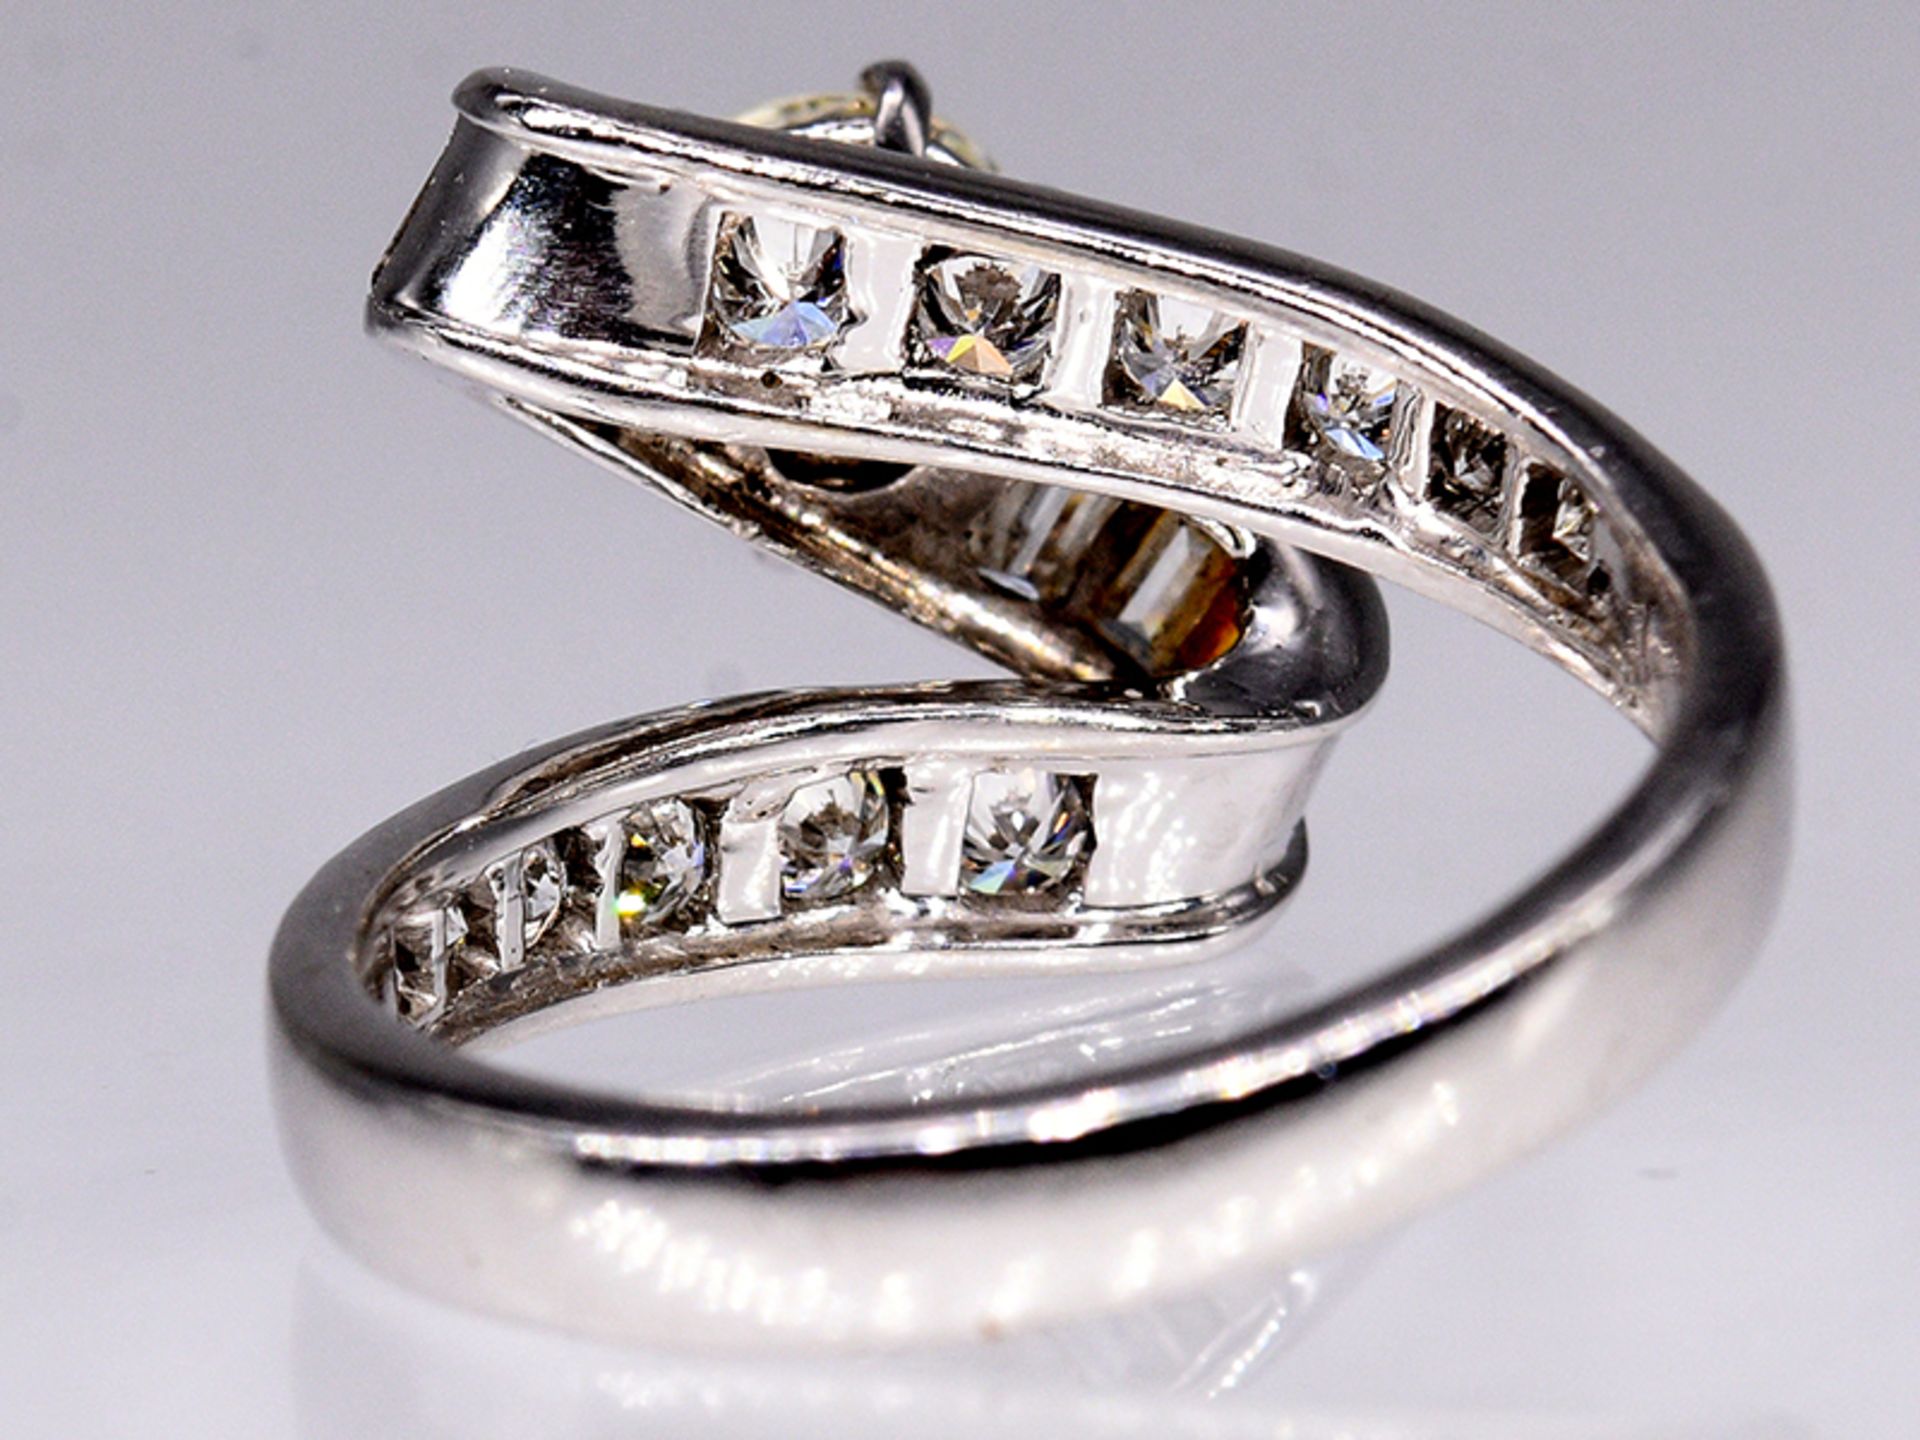 Platin-Ring mit Brillant und Diamanten, zus. ca. 1,85 ct, Juwelier Stern, Rio de Janeiro von 1970. - Bild 7 aus 7